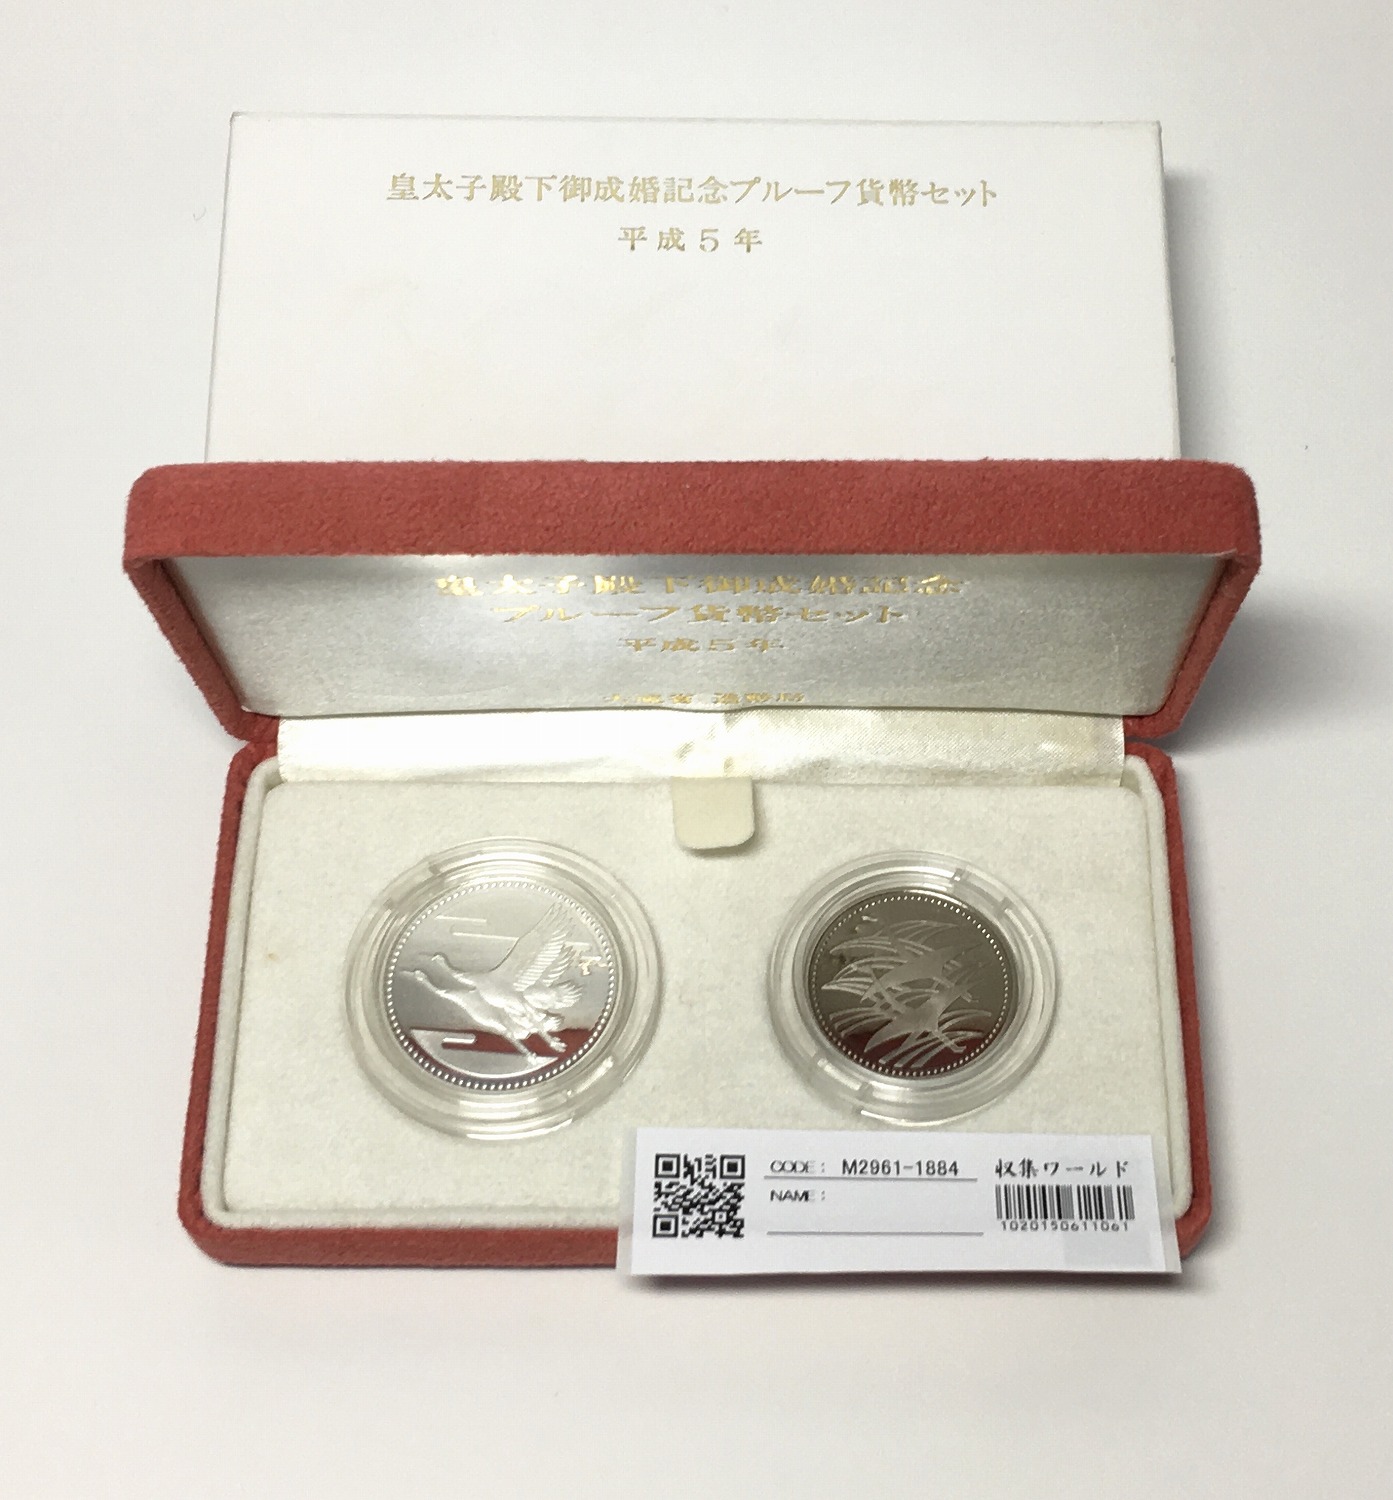 皇太子殿下御成婚記念 五千円銀貨と500円白銅貨 プルーフ貨2枚セット